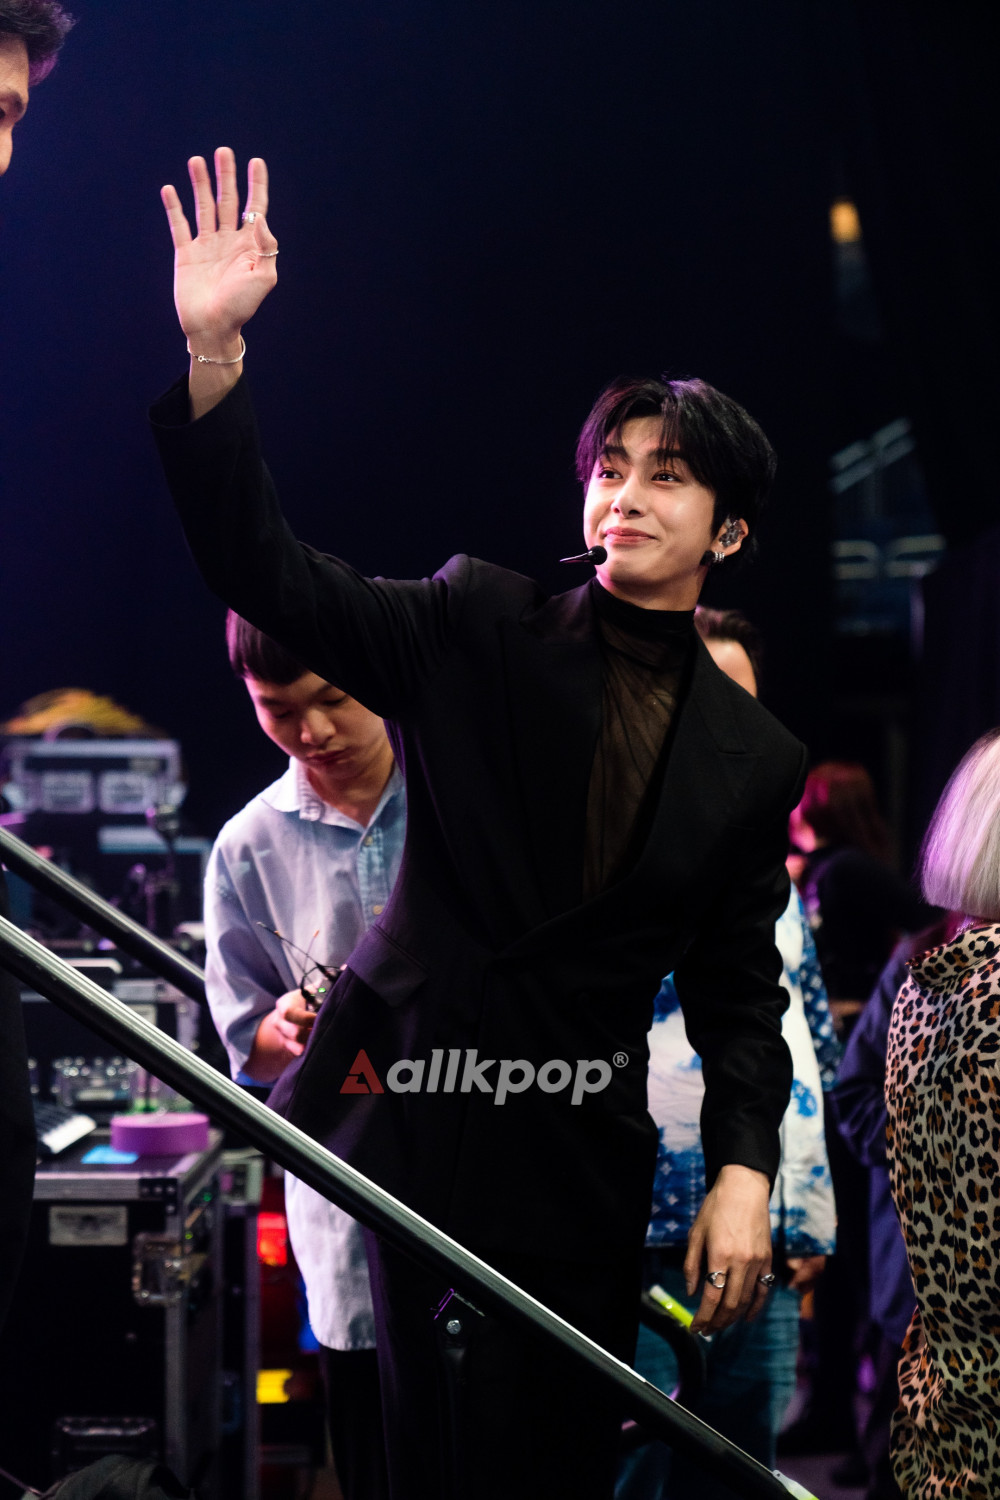 [ФОТО] Шону и Хёнвон из MONSTA X + Вонён и Юджин из IVE на шоу Krazy K-Pop Super Concert